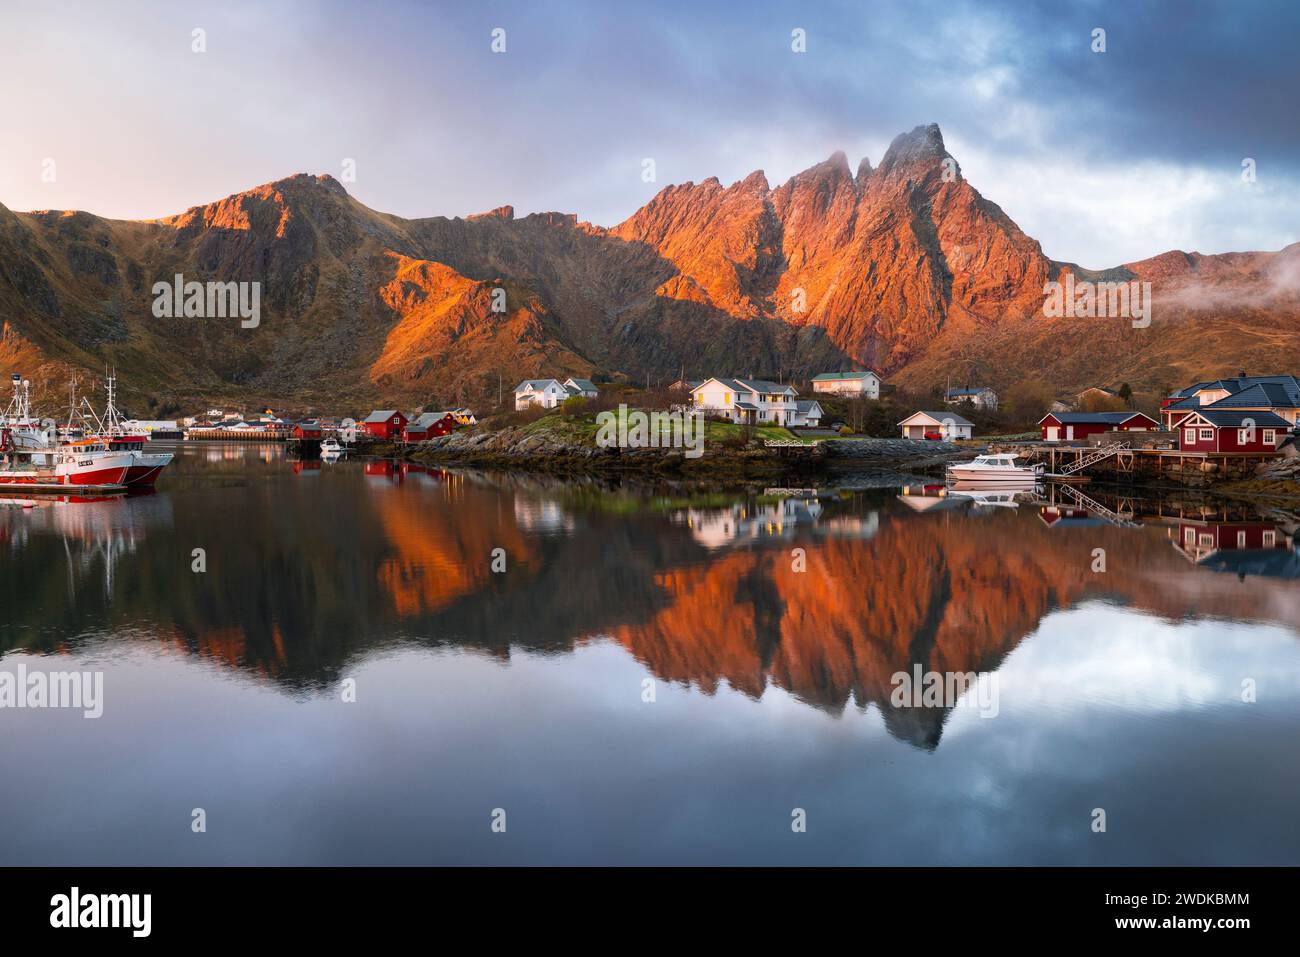 Reflexionen von Häusern und Bergen im Wasser im Dorf Ballstad während des Sonnenaufgangs, Vestvagoy, Nordland, Lofoten-Inseln, Norwegen, Nordeuropa Stockfoto